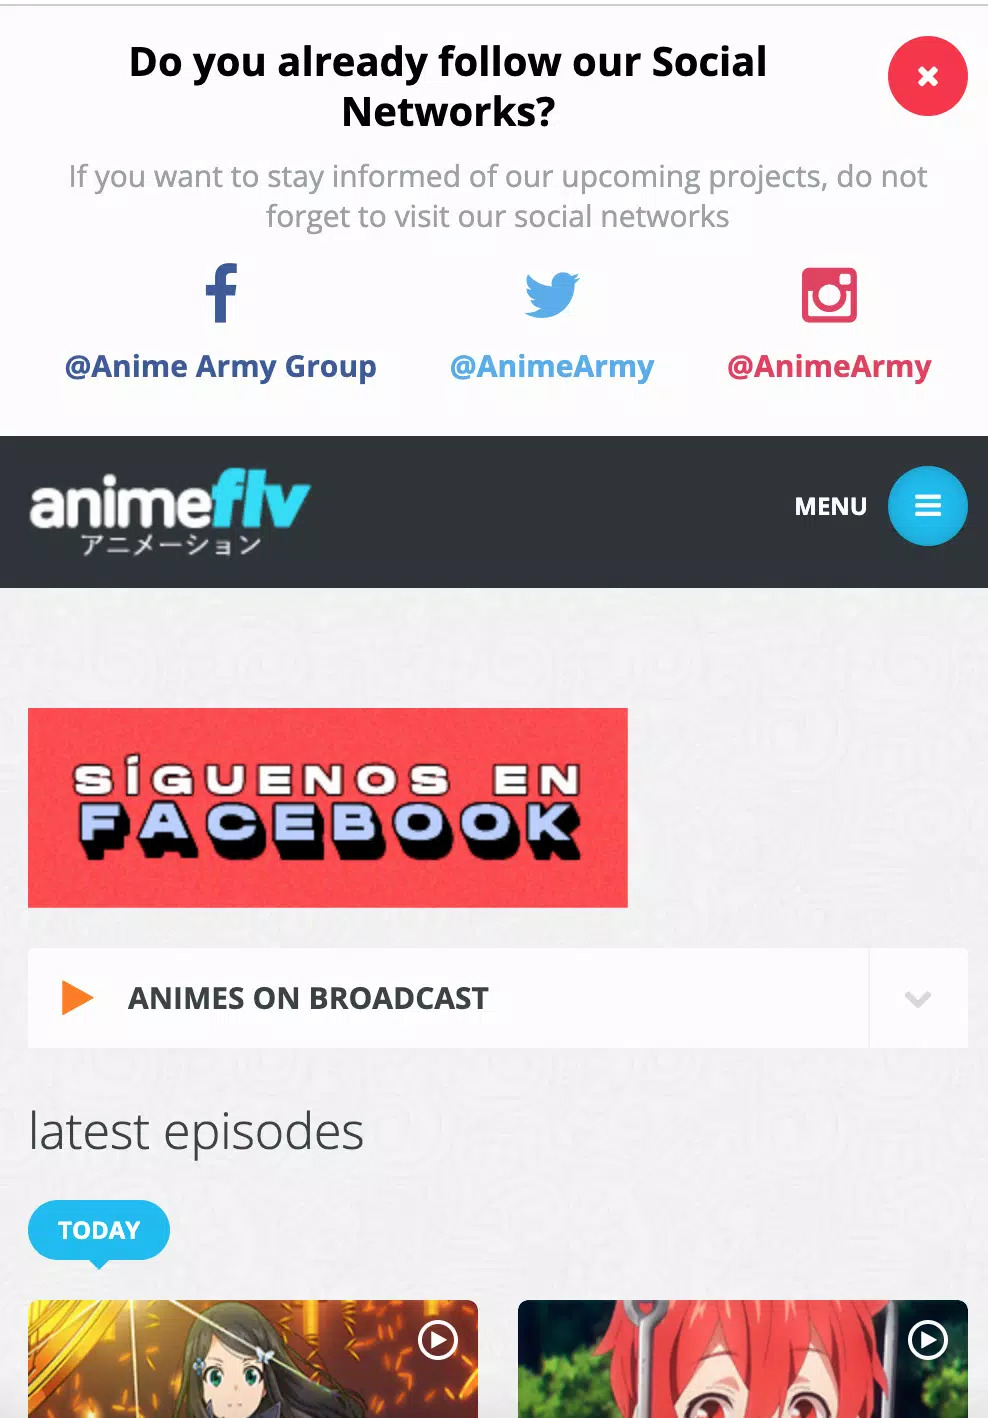 Anime Action - Assistir Animes Online APK (Android App) - Baixar Grátis